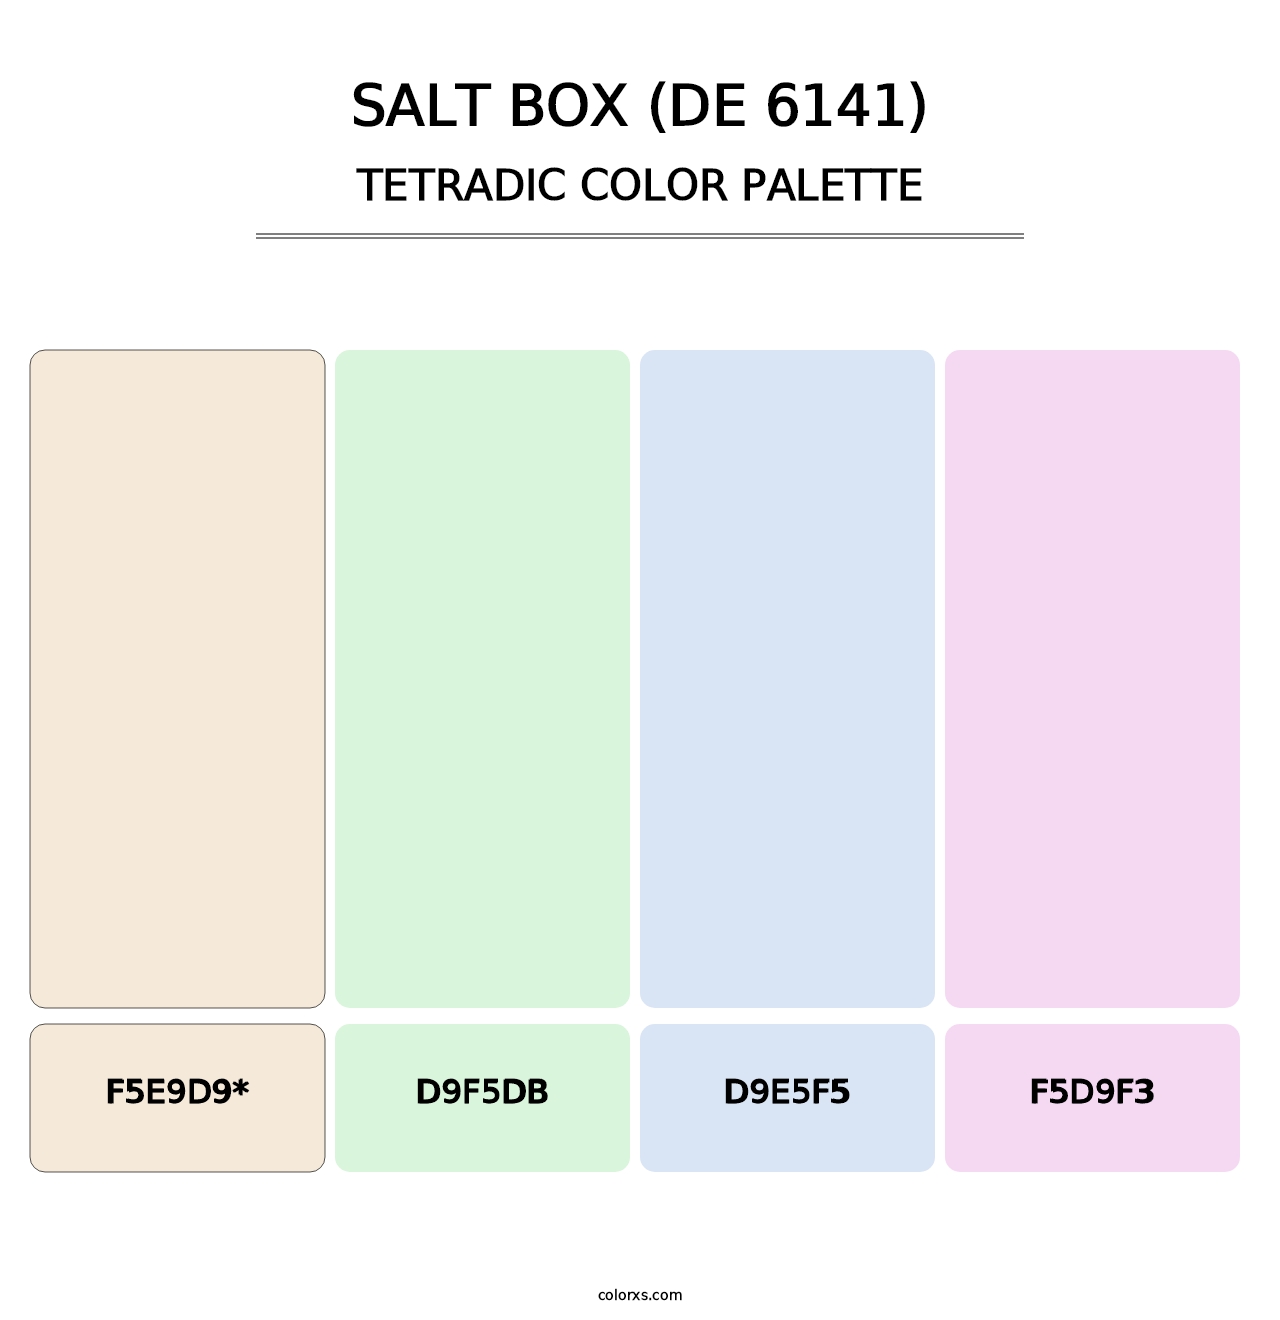 Salt Box (DE 6141) - Tetradic Color Palette